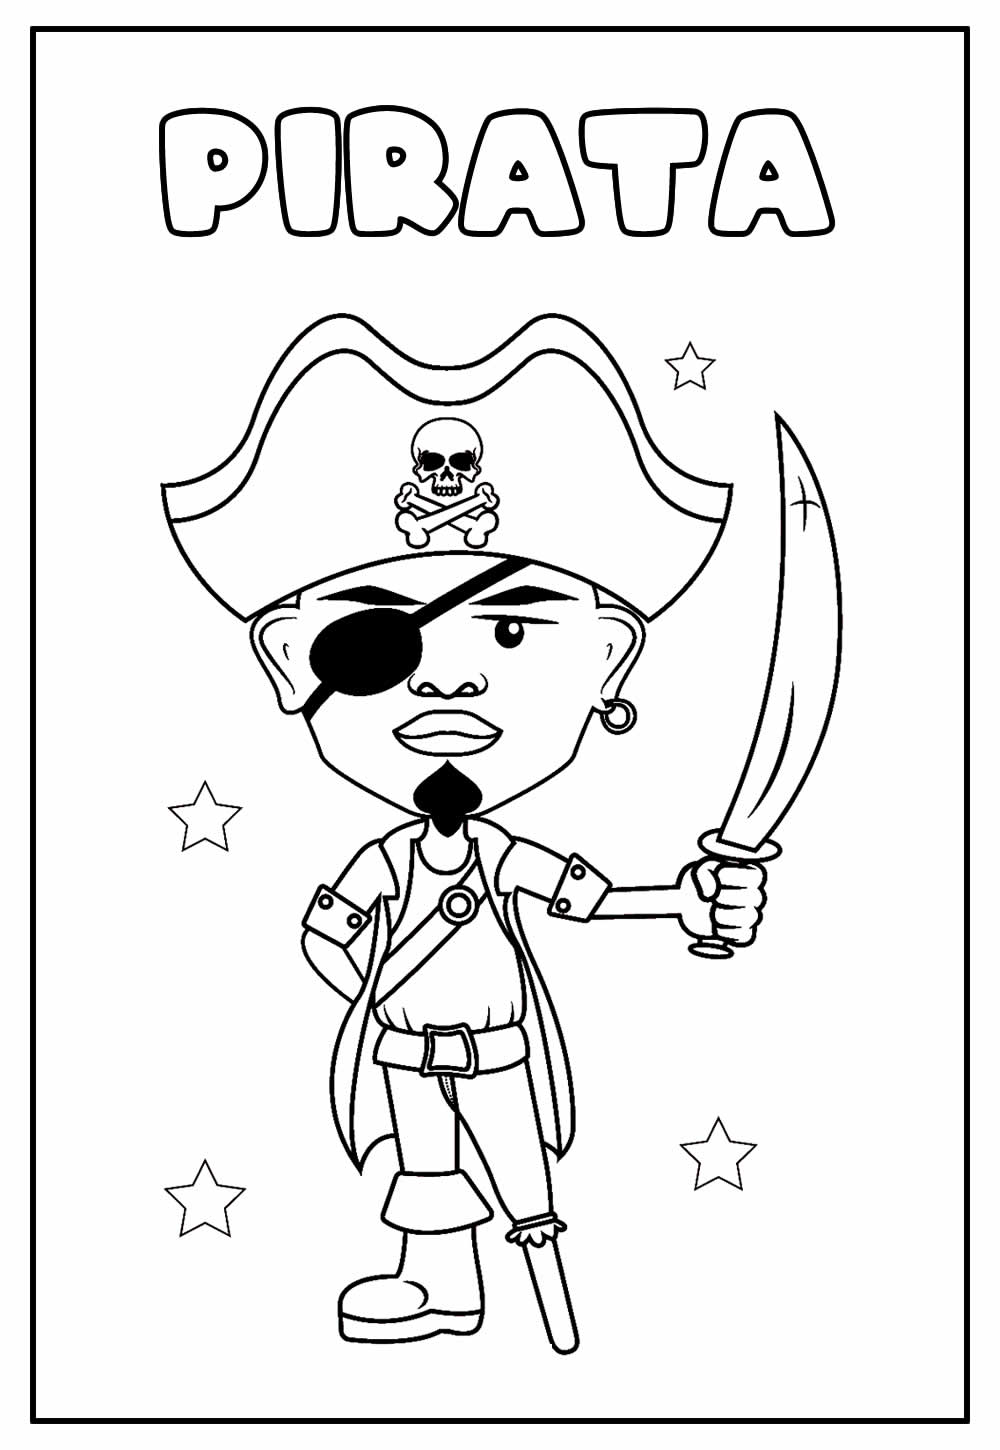 Desenho Educativo de Pirata para colorir